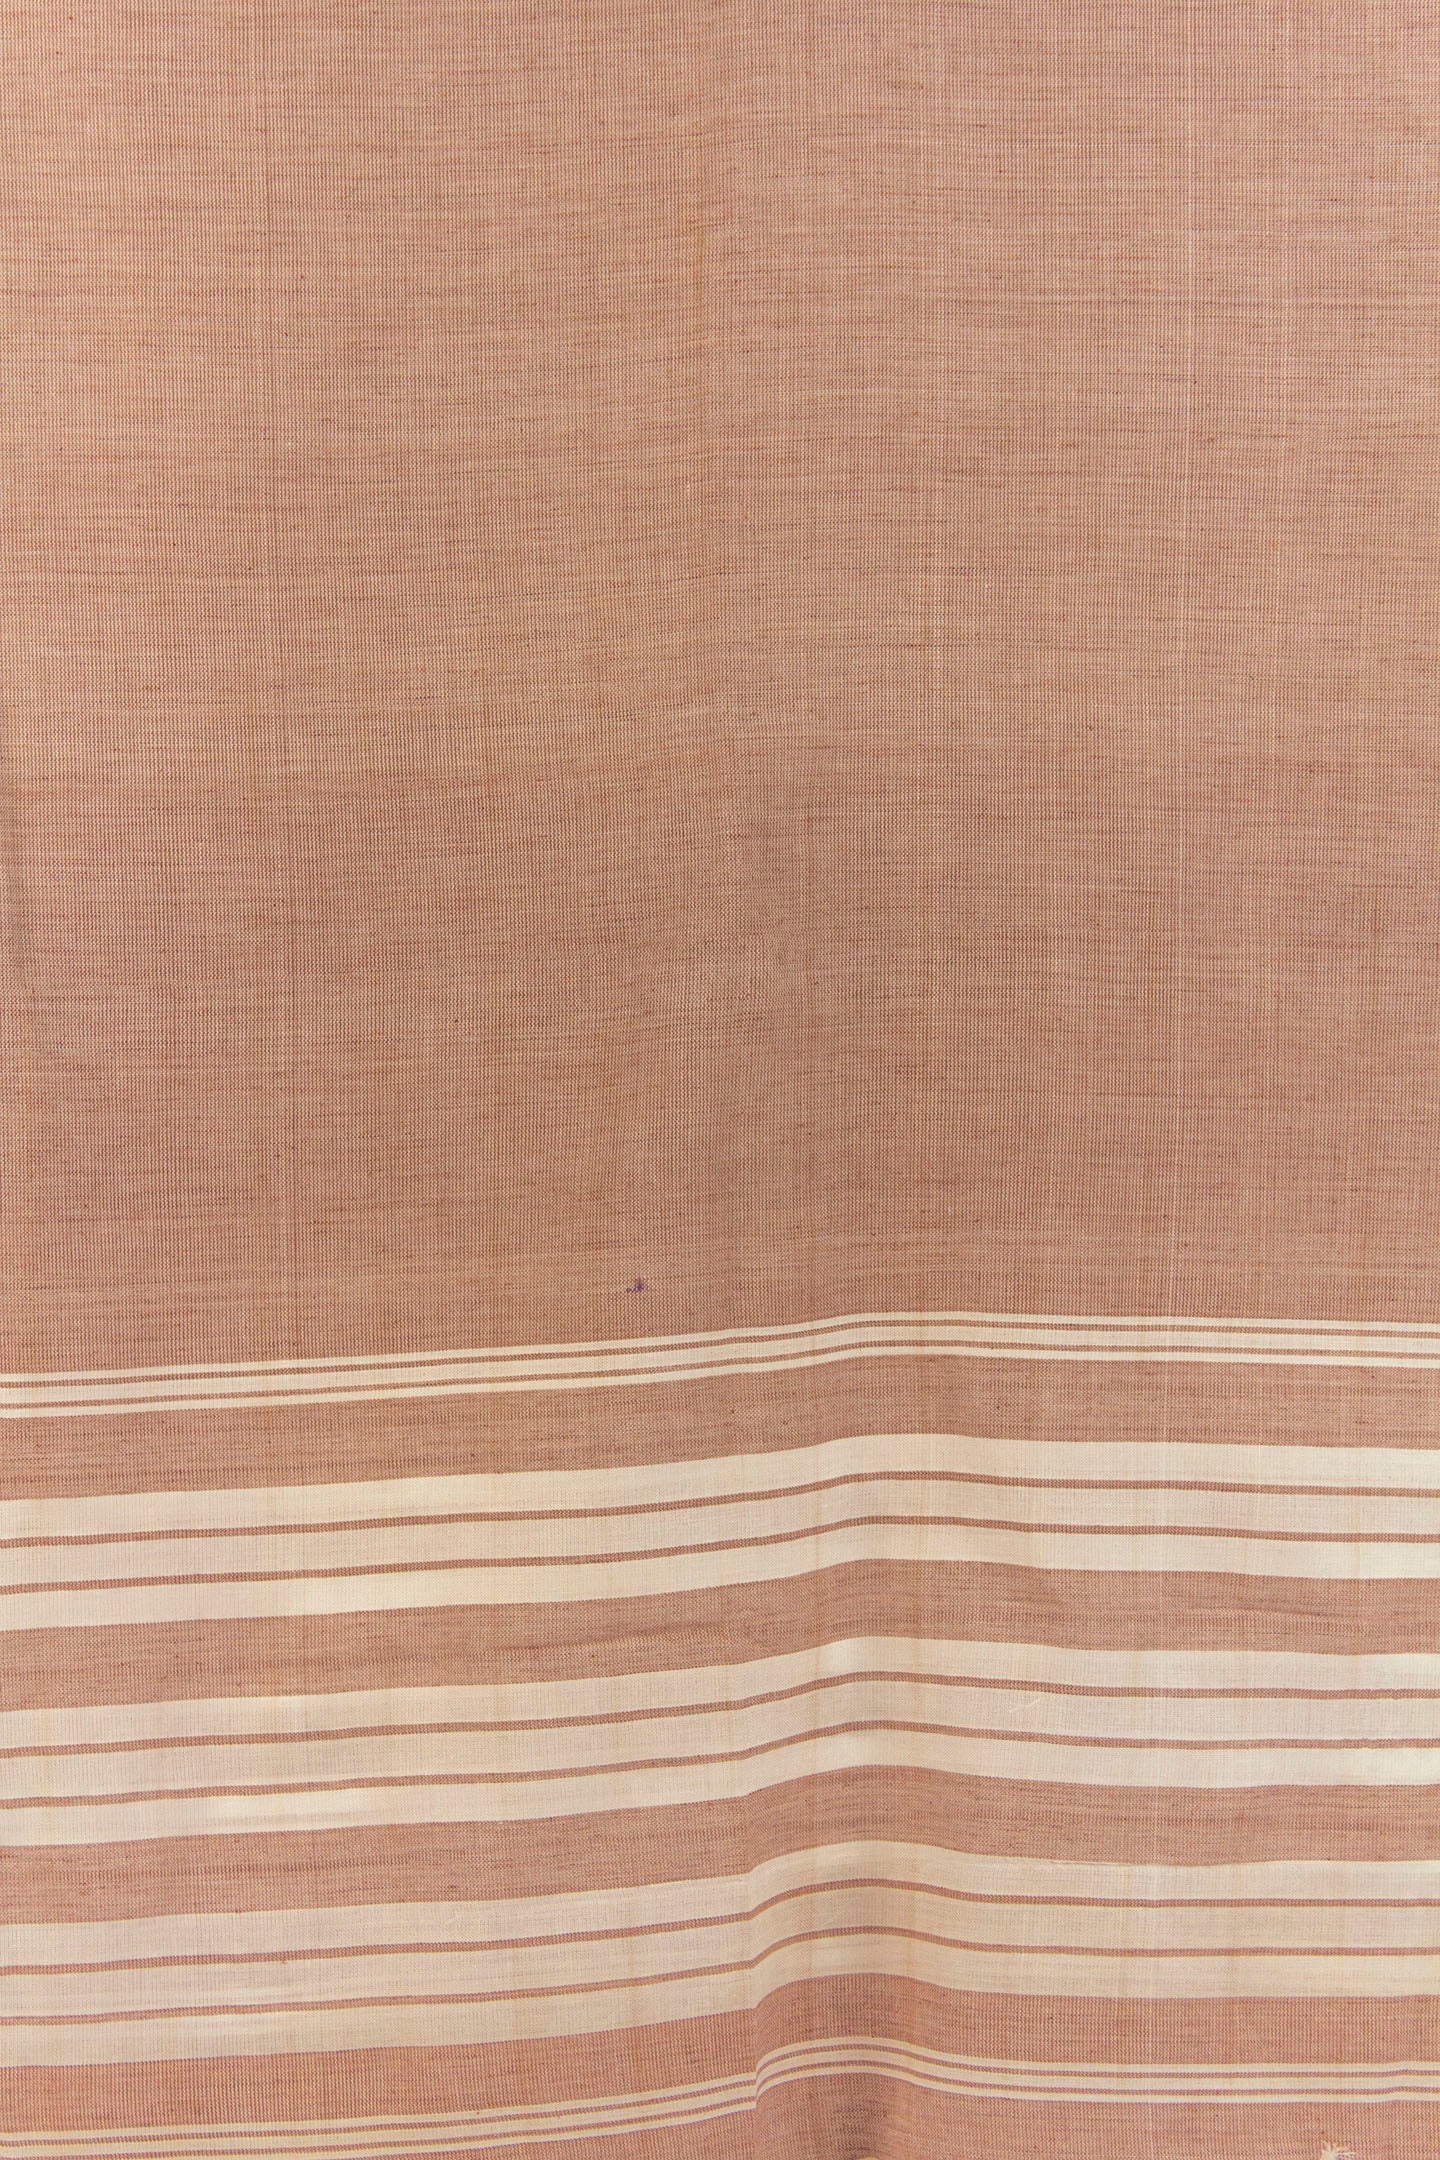 कॉटन गामुसा तौलिया पीच (ऑर्डर करने के लिए बनाया गया)